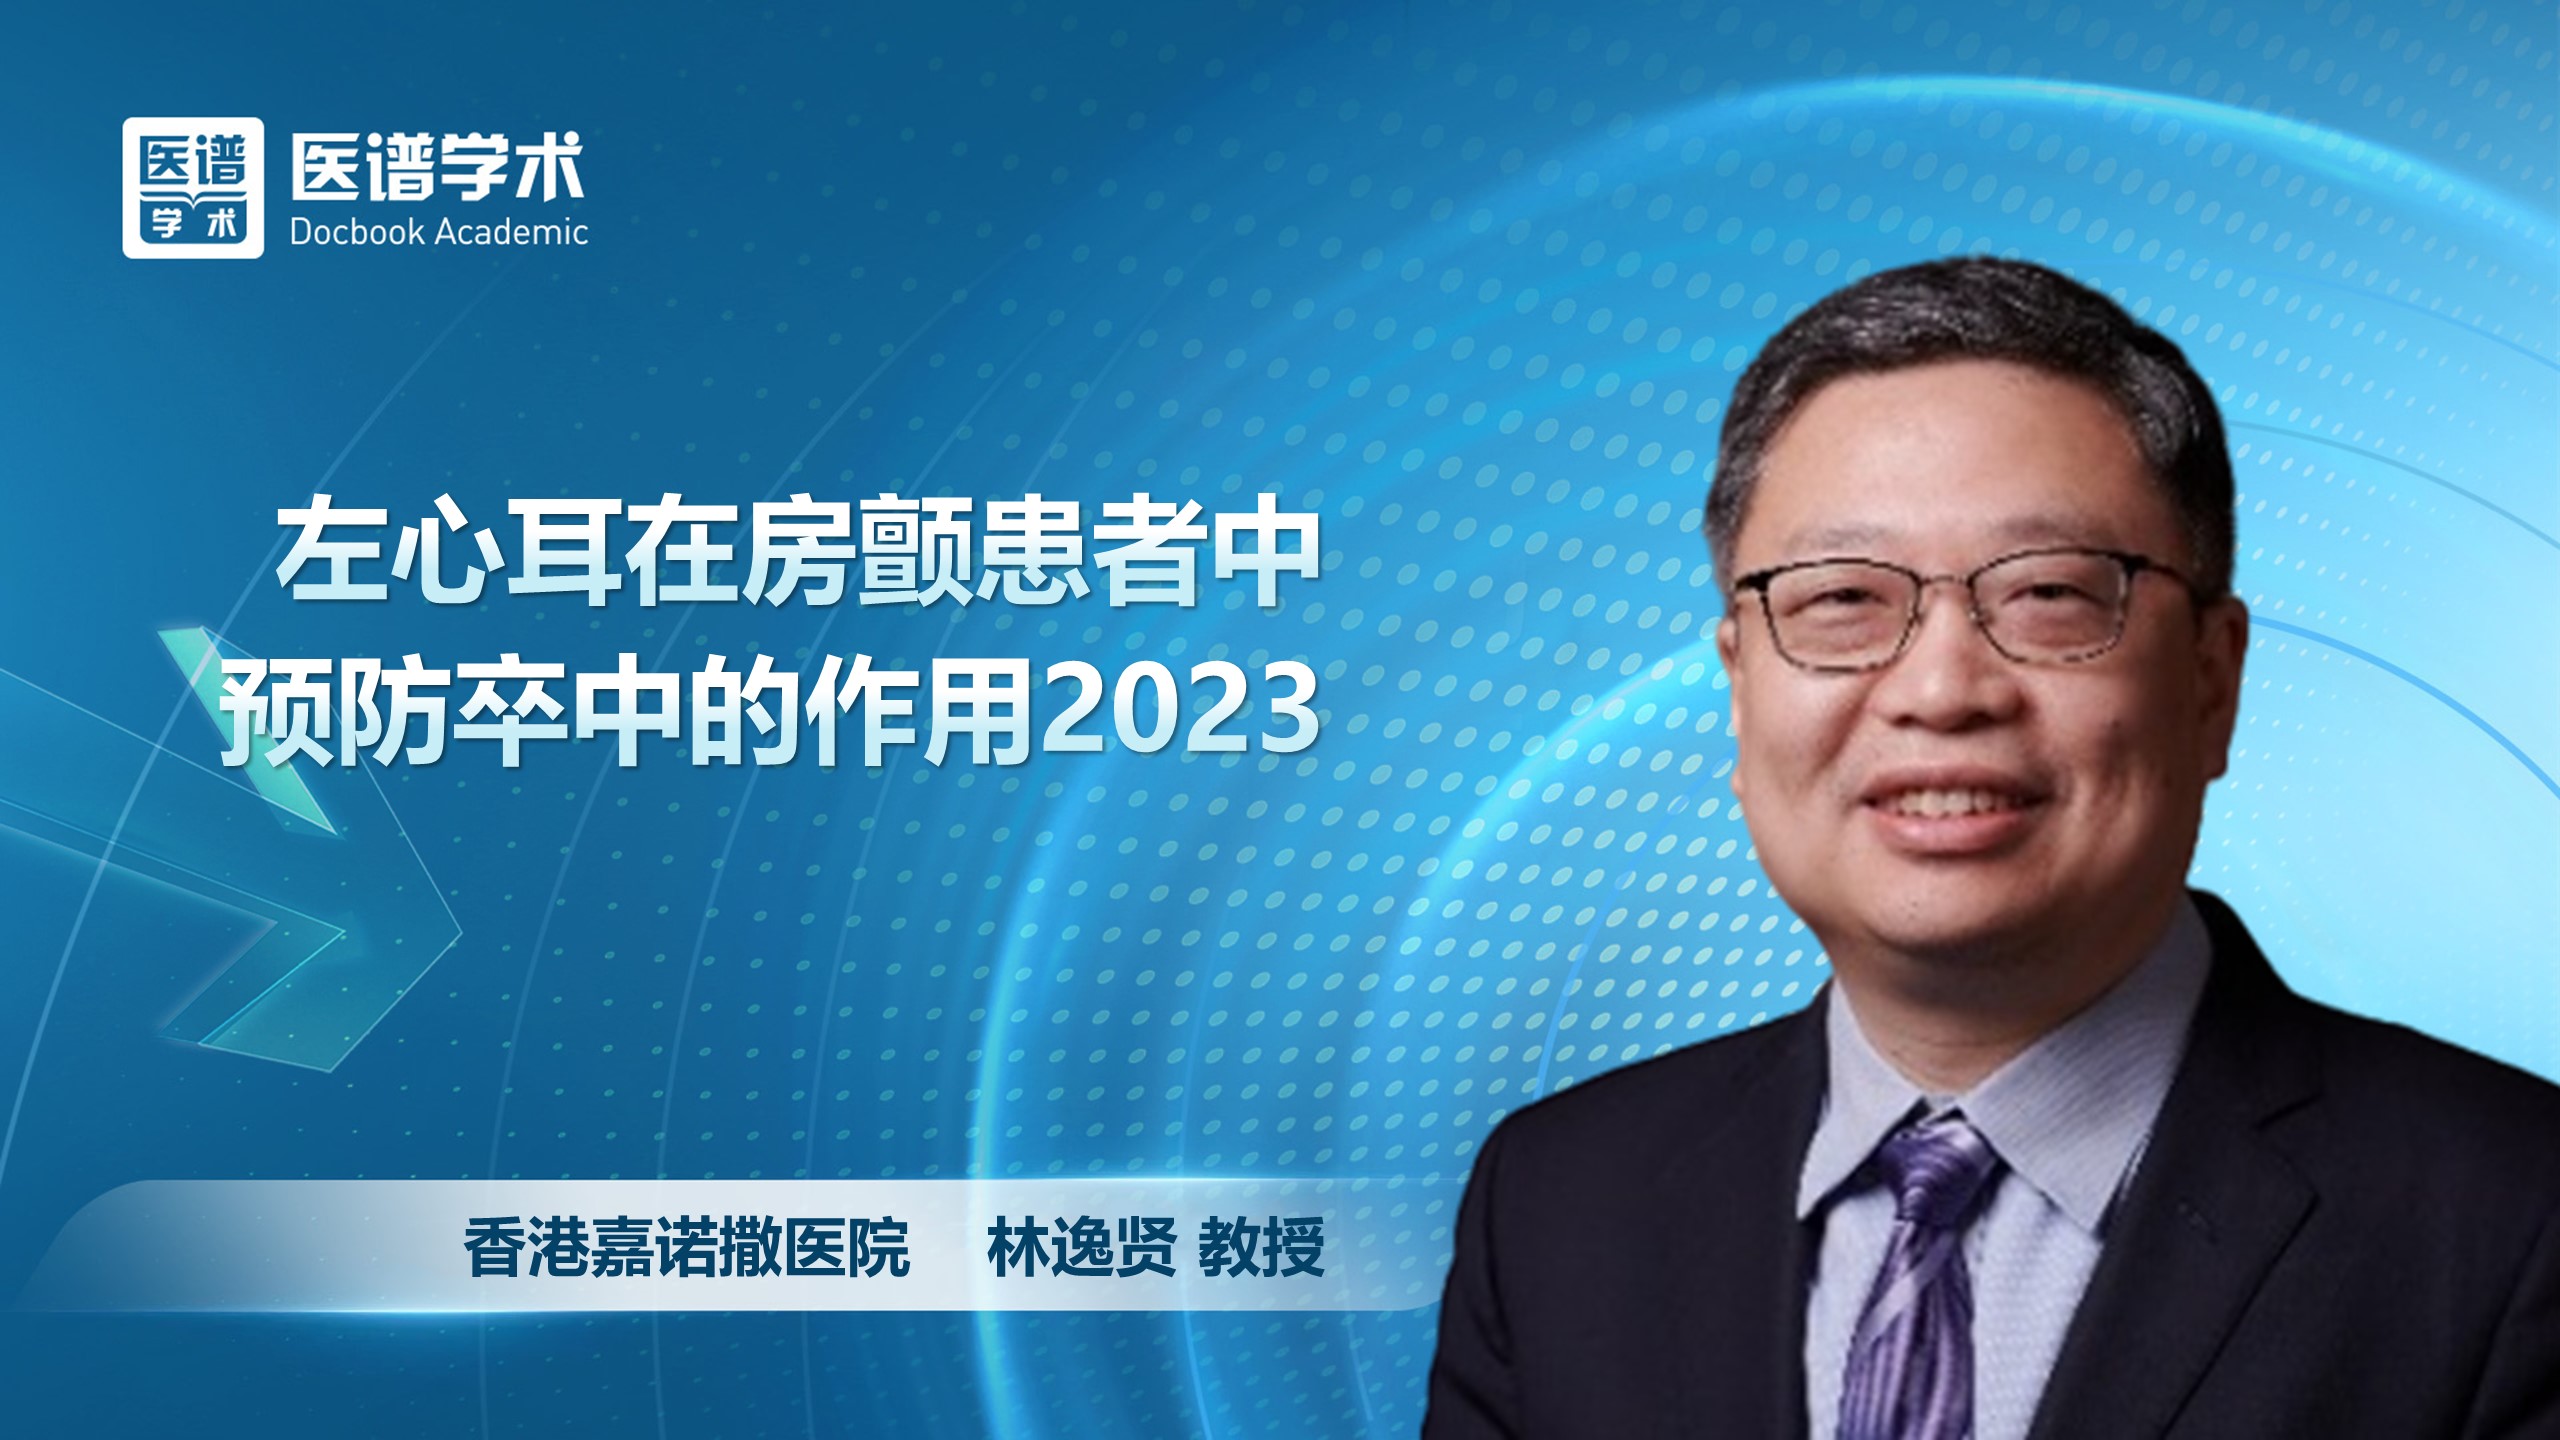 林逸贤-左心耳在房颤患者中预防卒中的作用2023